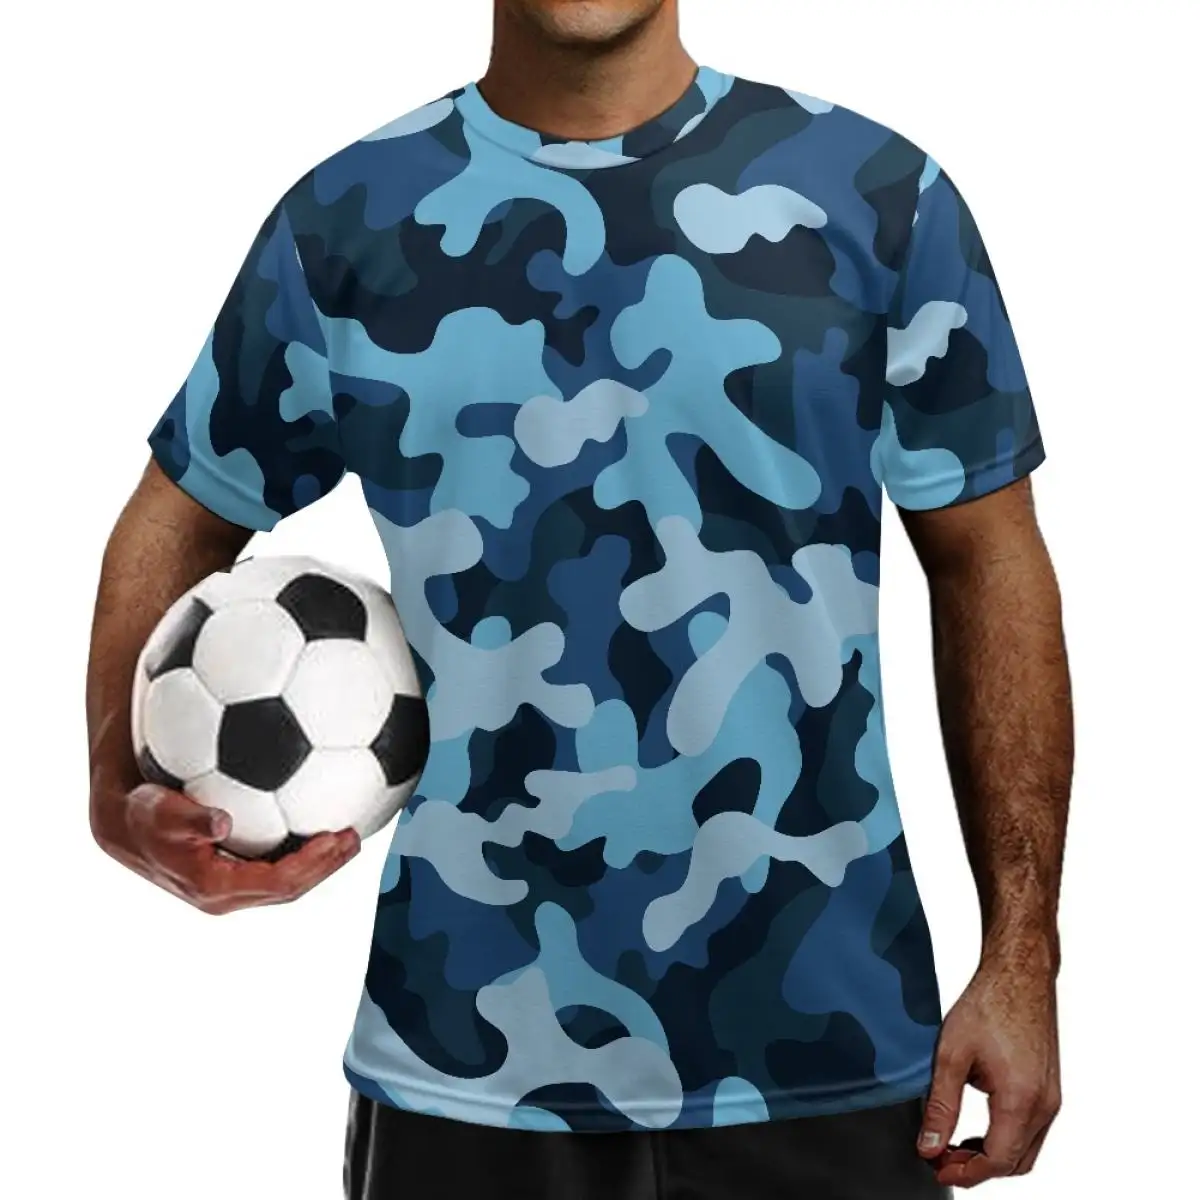 Ropa de entrenamiento de fútbol para hombre, uniforme de manga corta con estampado de camuflaje, camiseta de fútbol personalizada con estampado bajo demanda, uniforme de fútbol